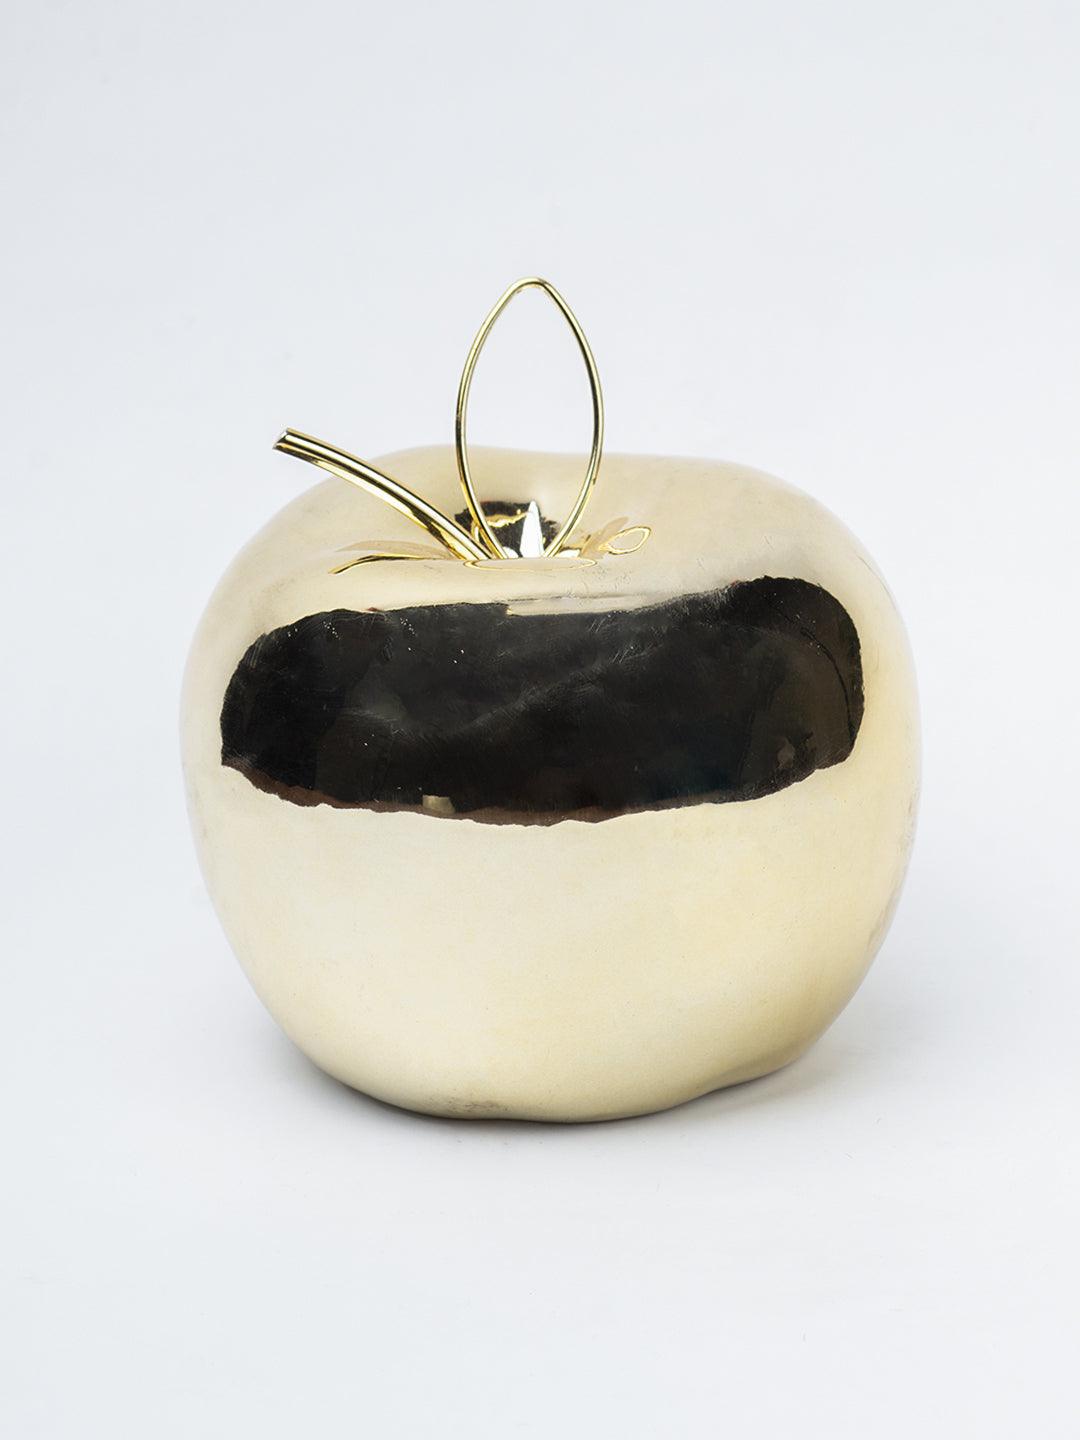 Ceramic Apple sculpture - Golden Décor Ornament - 3